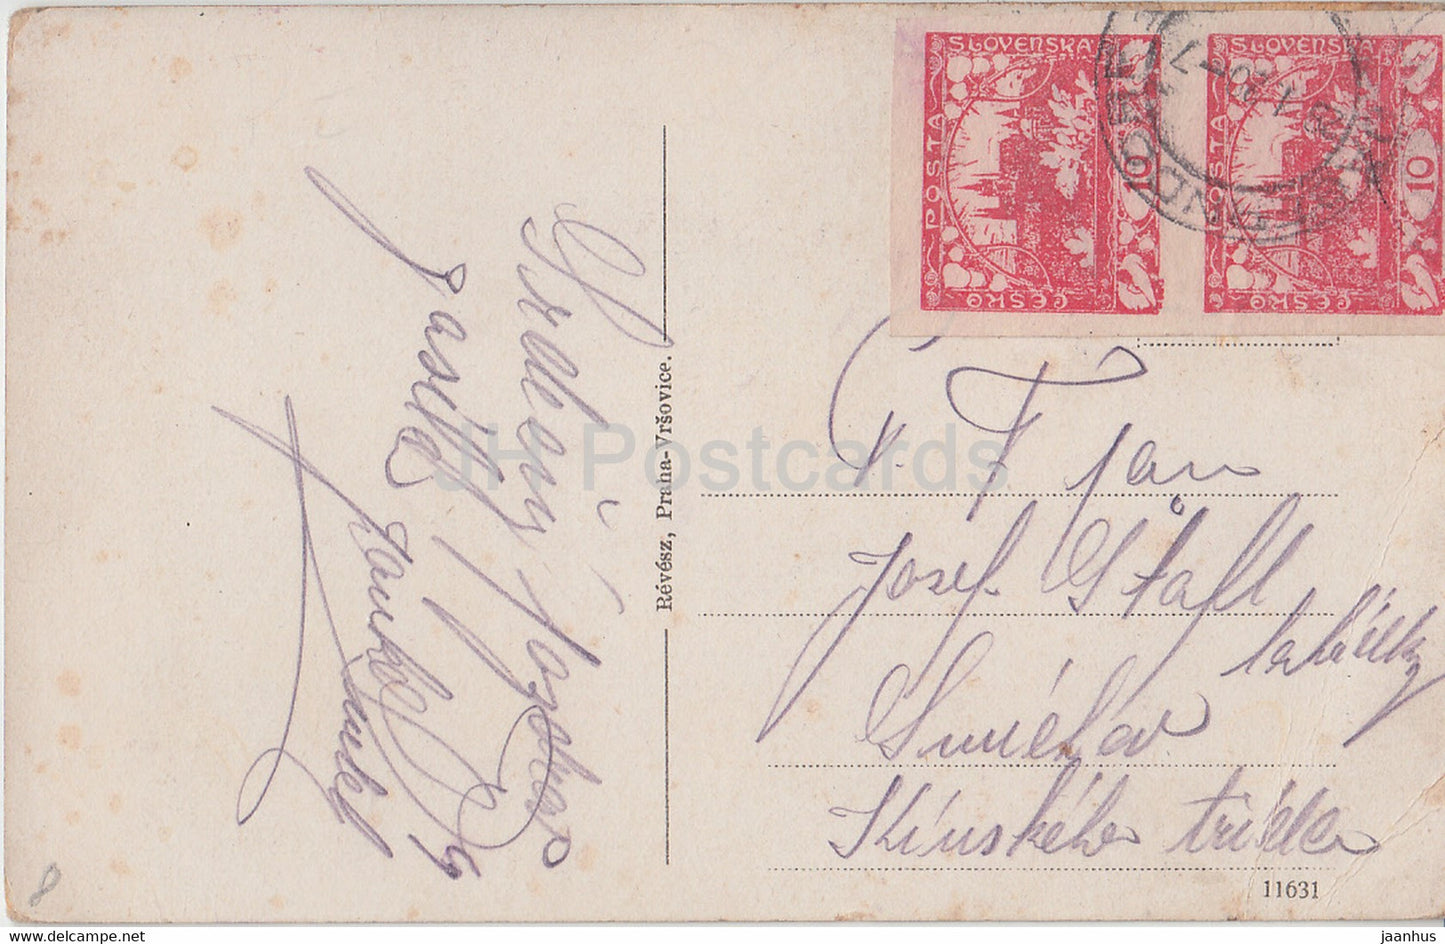 Cernosice - carte postale ancienne - République tchèque - Tchécoslovaquie - occasion